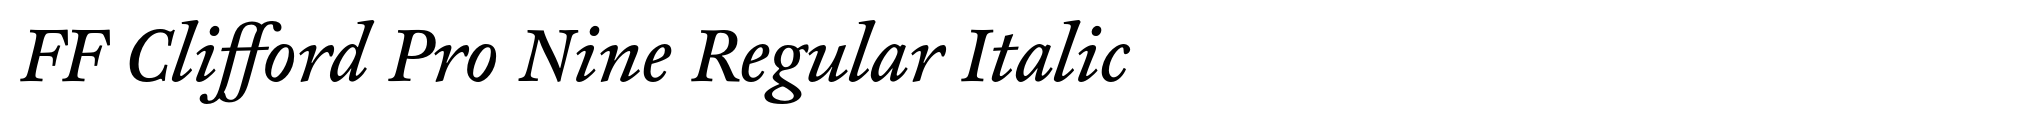 FF Clifford Pro Nine Regular Italic image